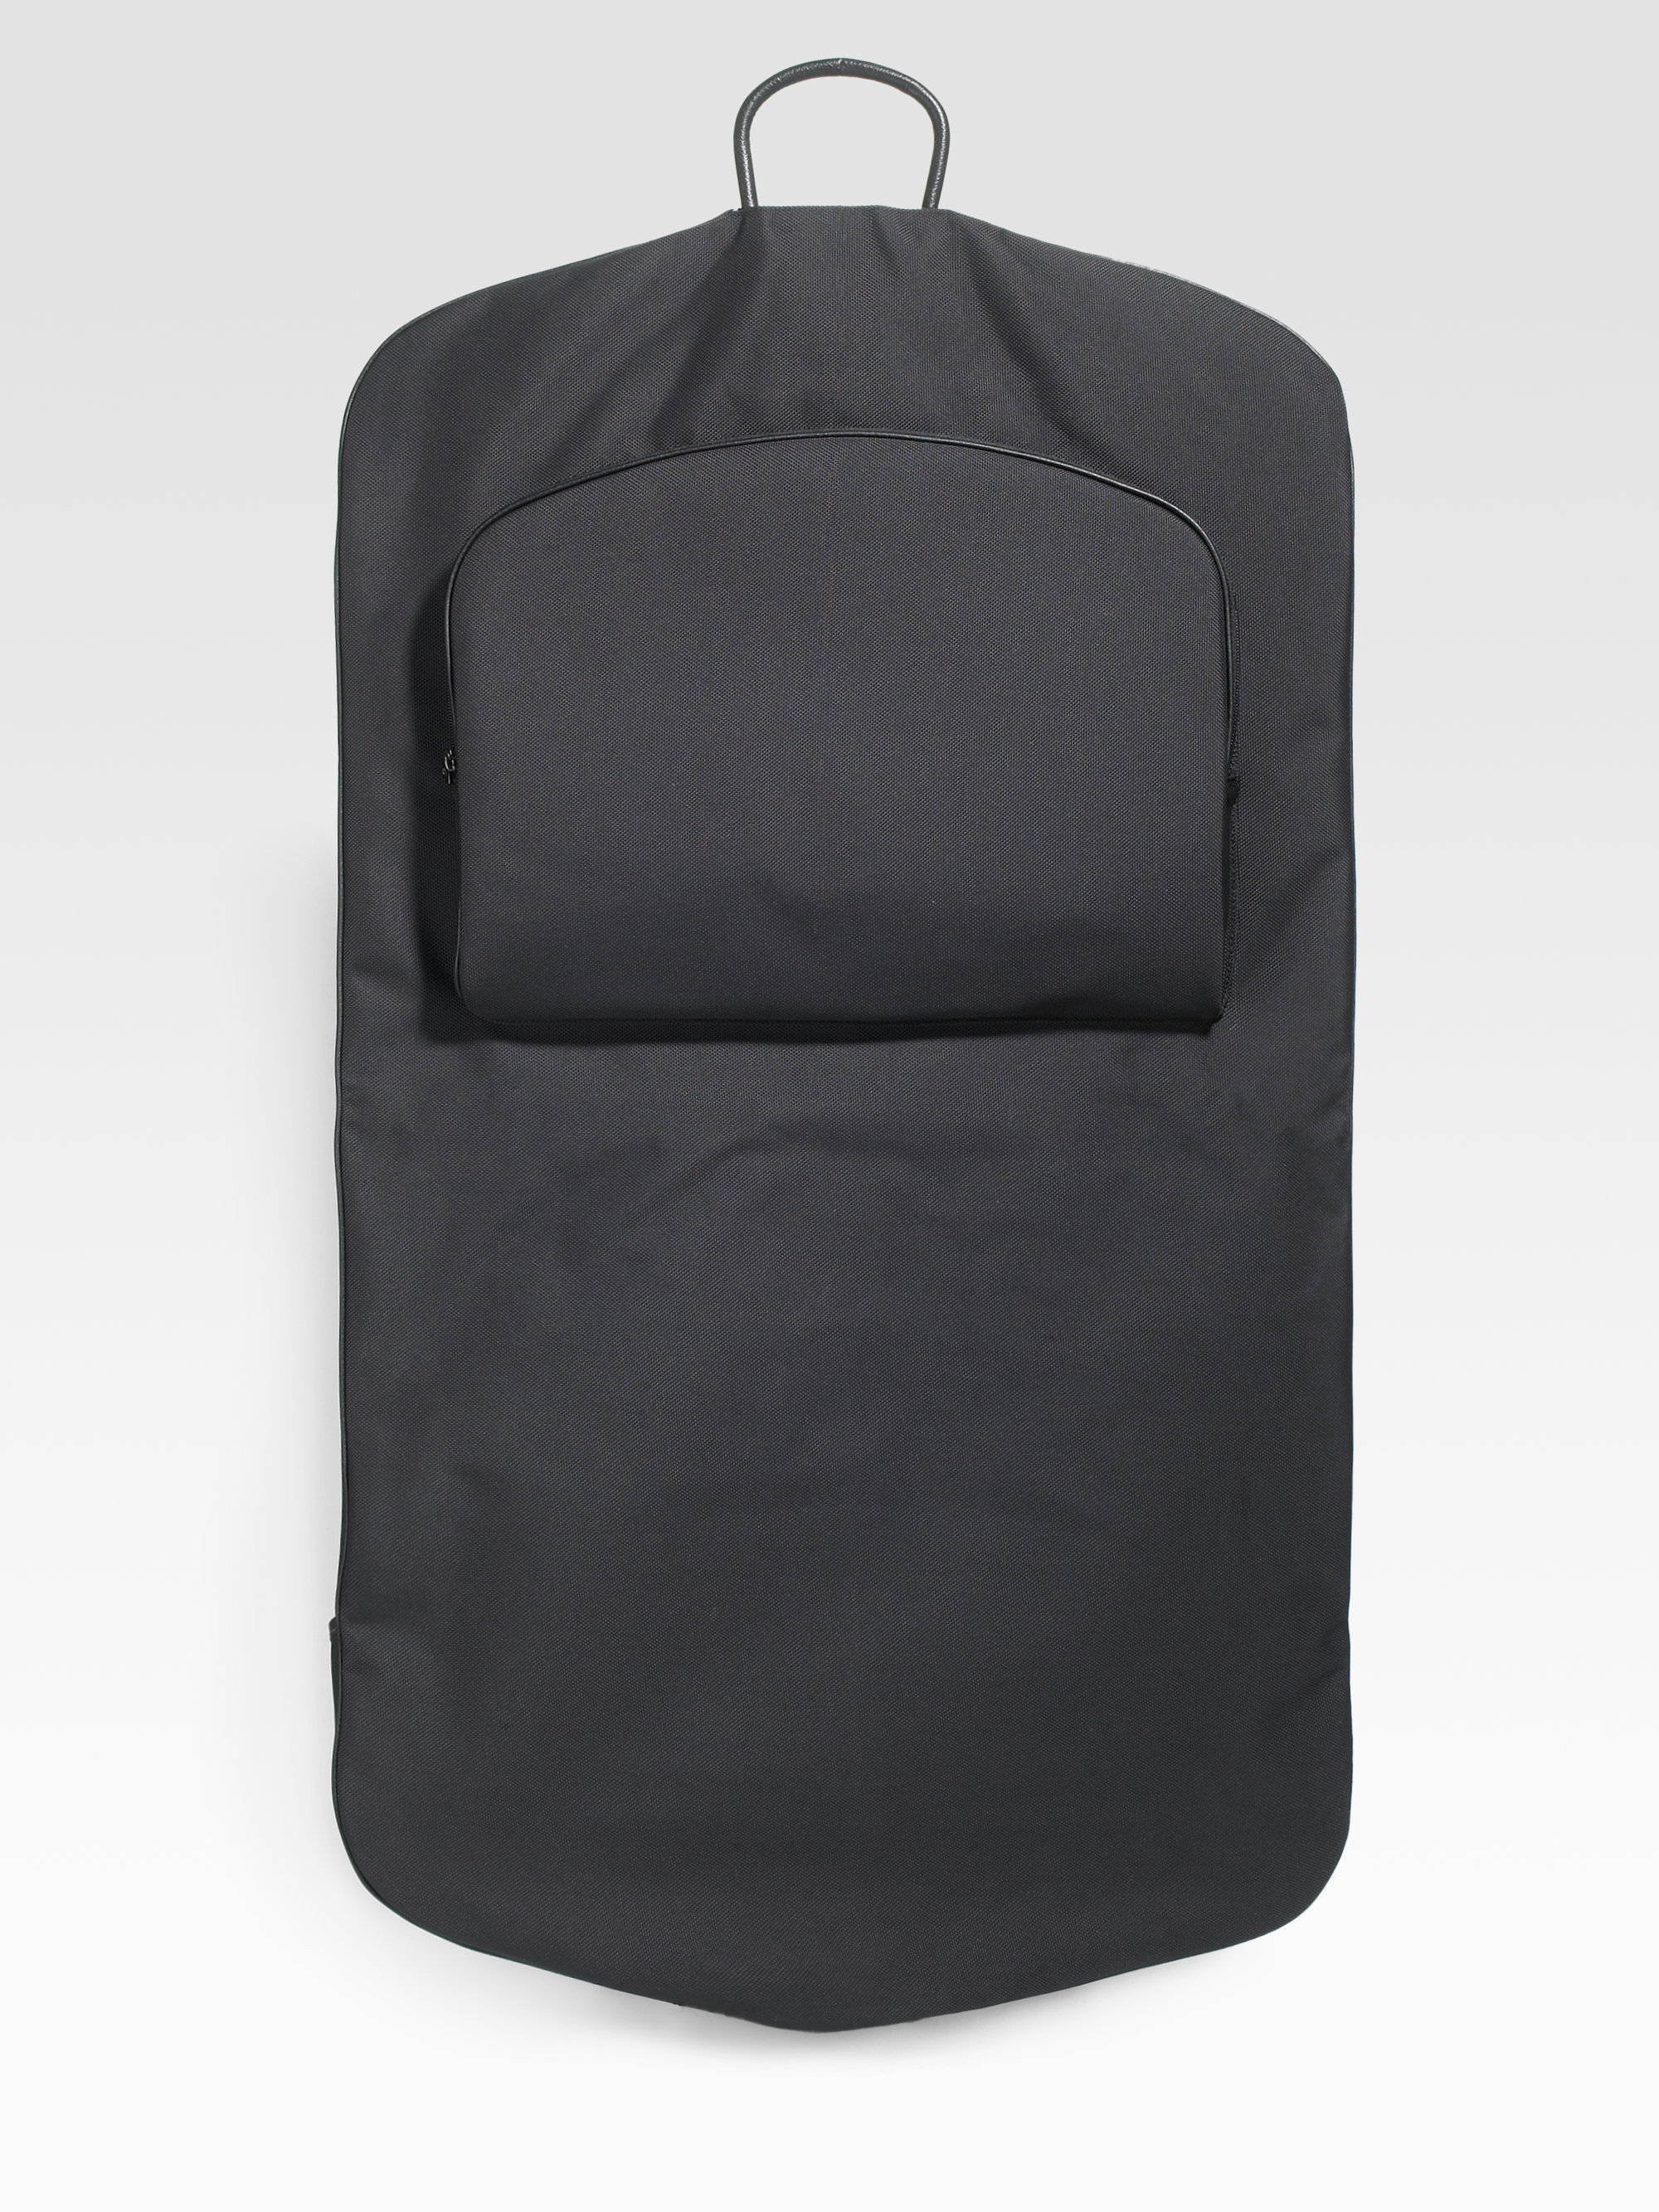 Hanging Garment Travel Bags For Men | Wydział Cybernetyki